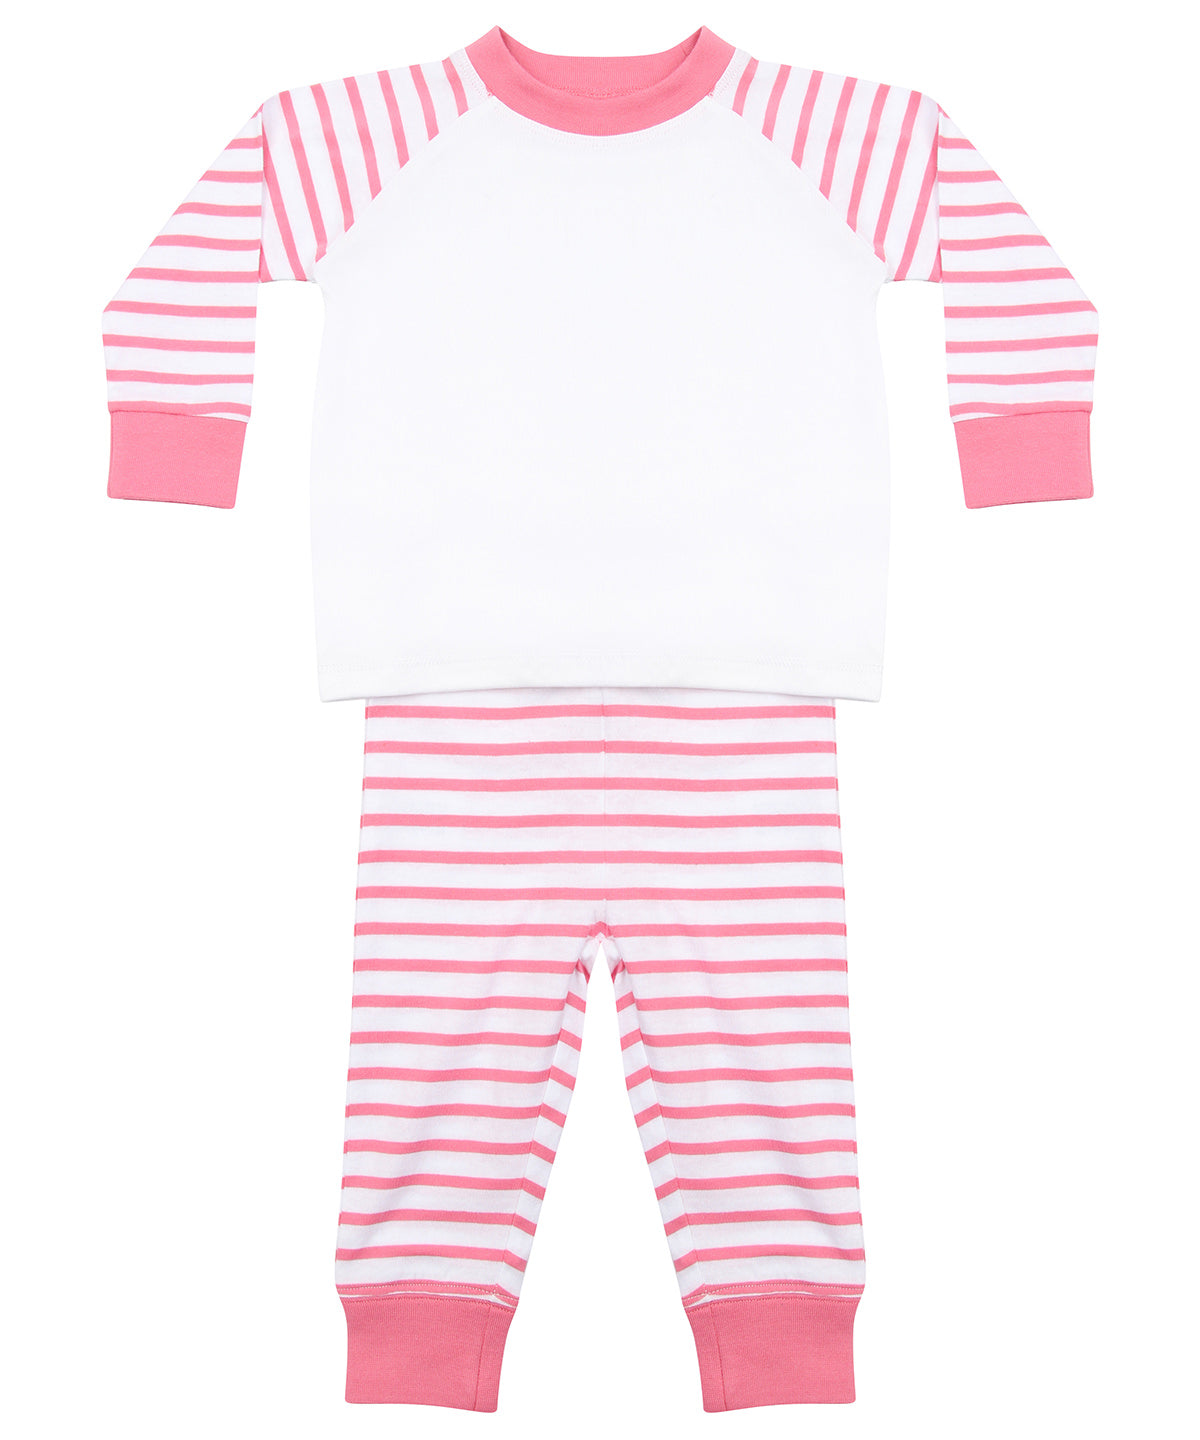 Striped Pyjamas